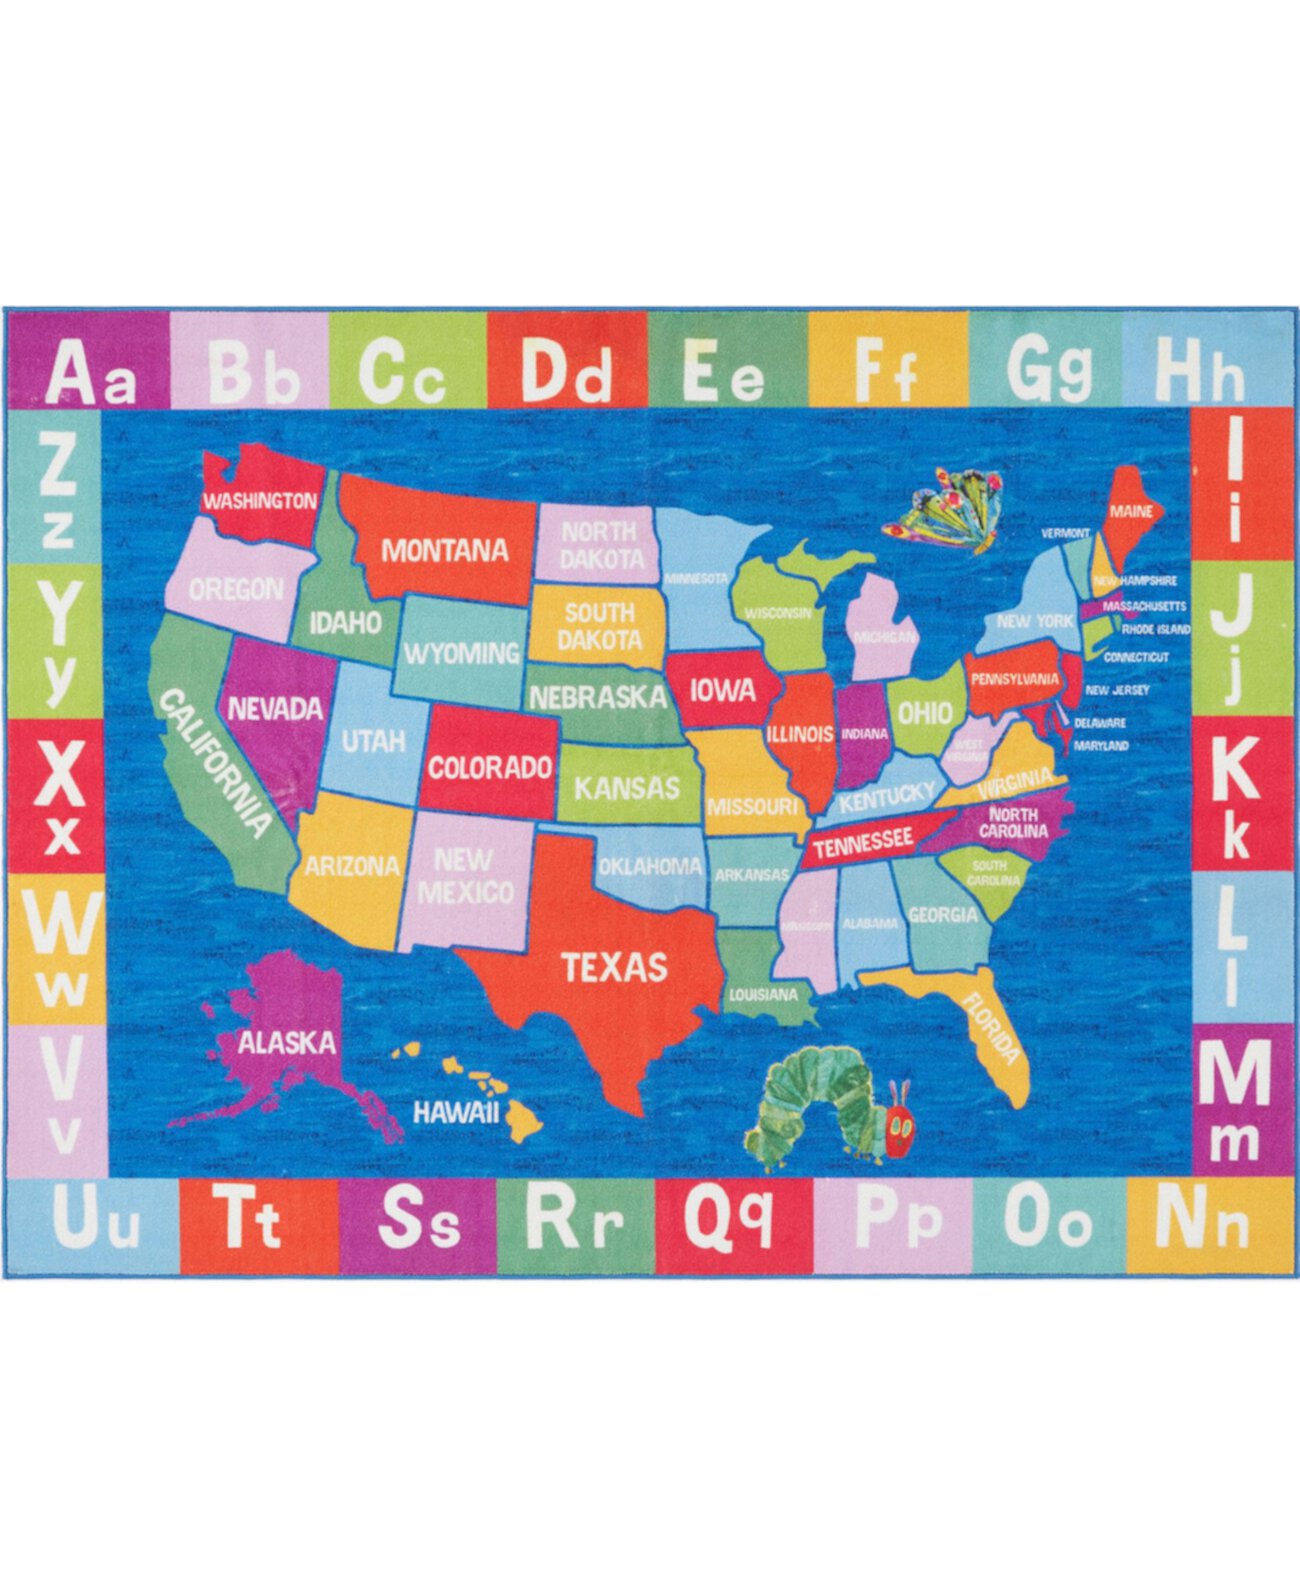 Синий коврик с картой США Elementary размером 4 фута 11 дюймов x 6 футов 6 дюймов Eric Carle